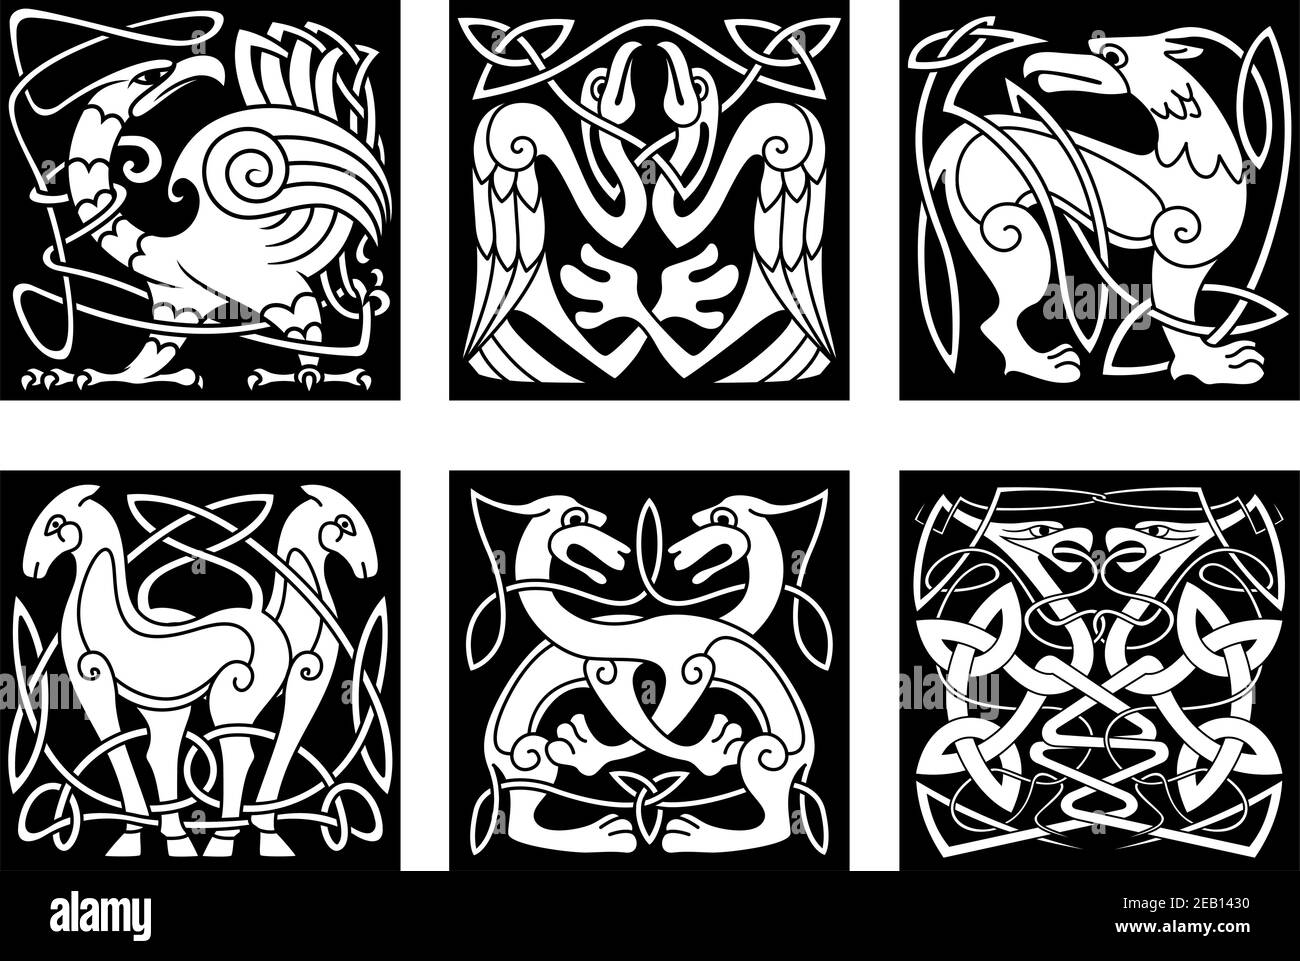 Keltische Tiere und Vögel mit traditionellem irischen Ornament auf schwarz Hintergrund für Tattoo oder heraldry Design Stock Vektor